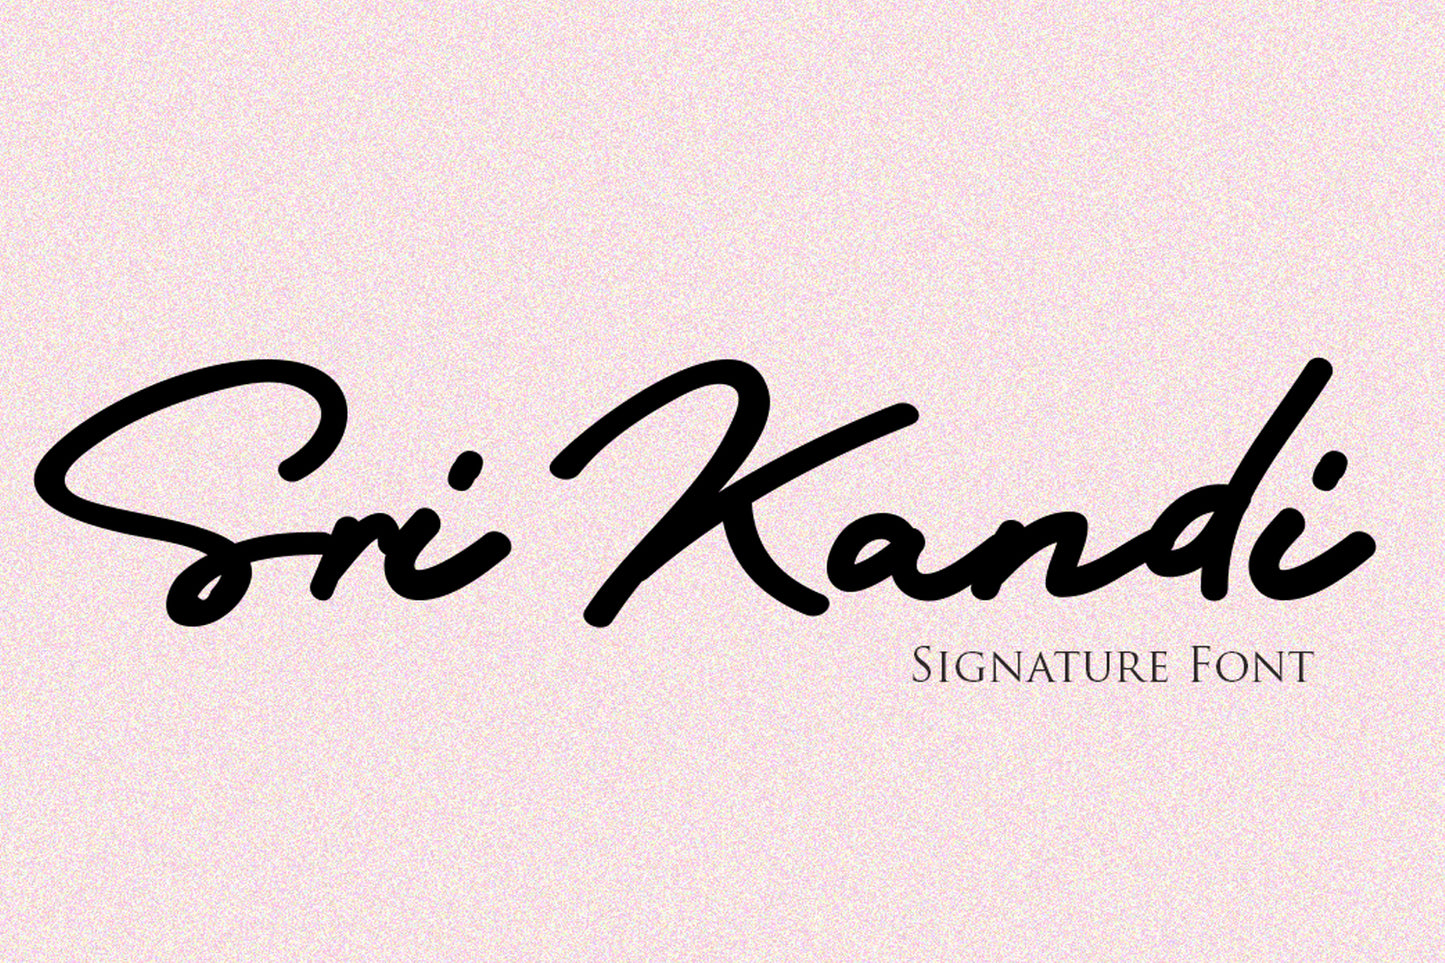 Sri Kandi - Free Signature Font